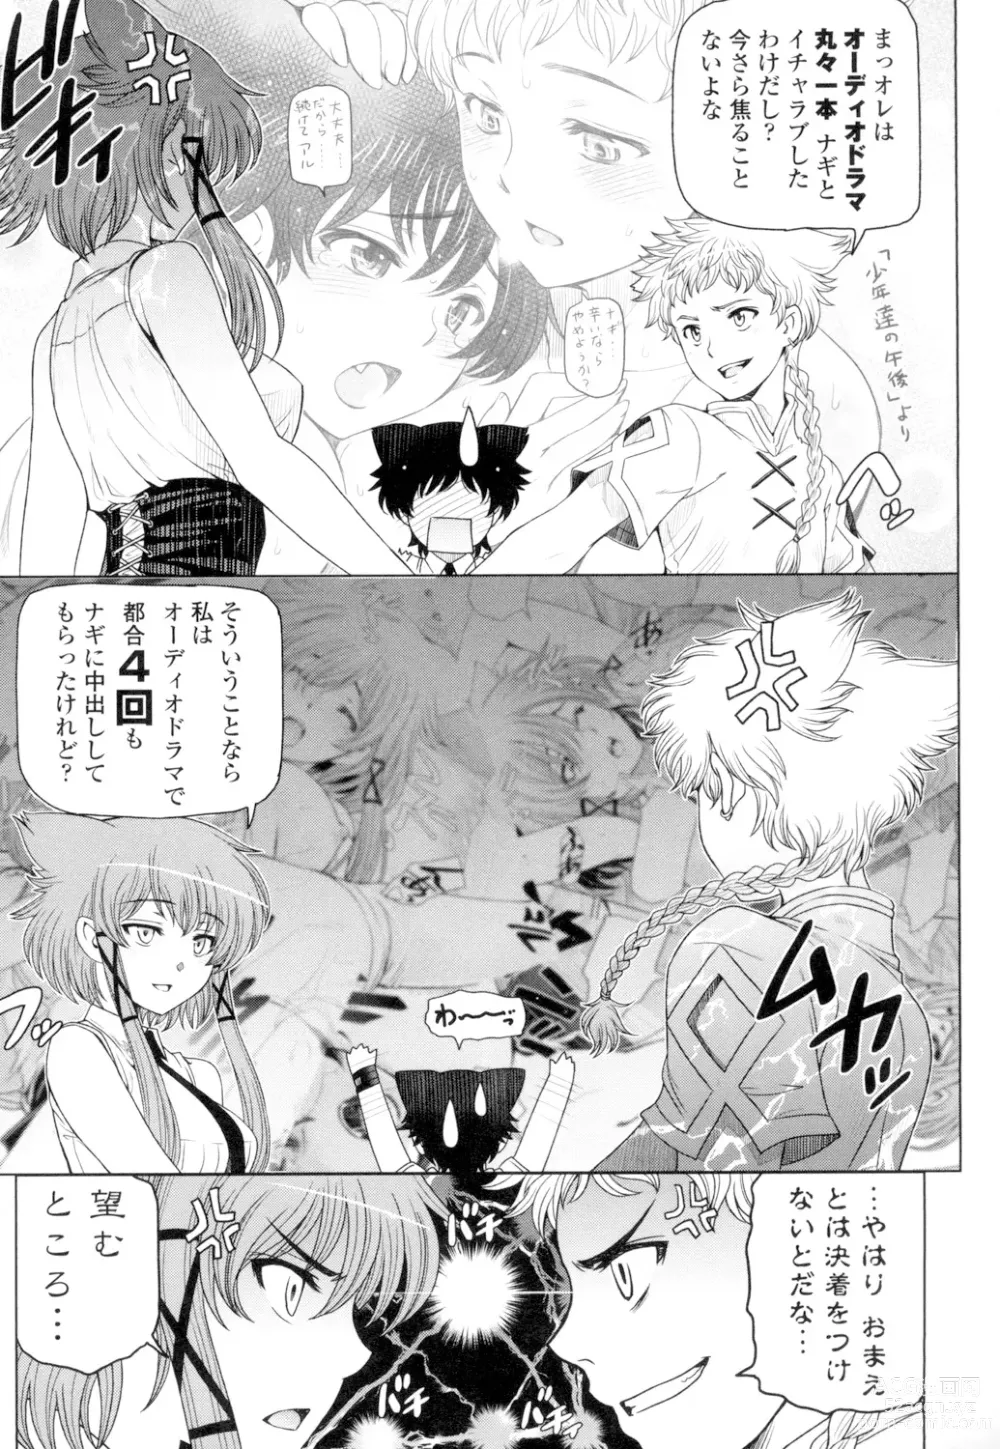 Page 209 of manga Natsu-jiru ~Ase ni Mamirete Gucchagucha~